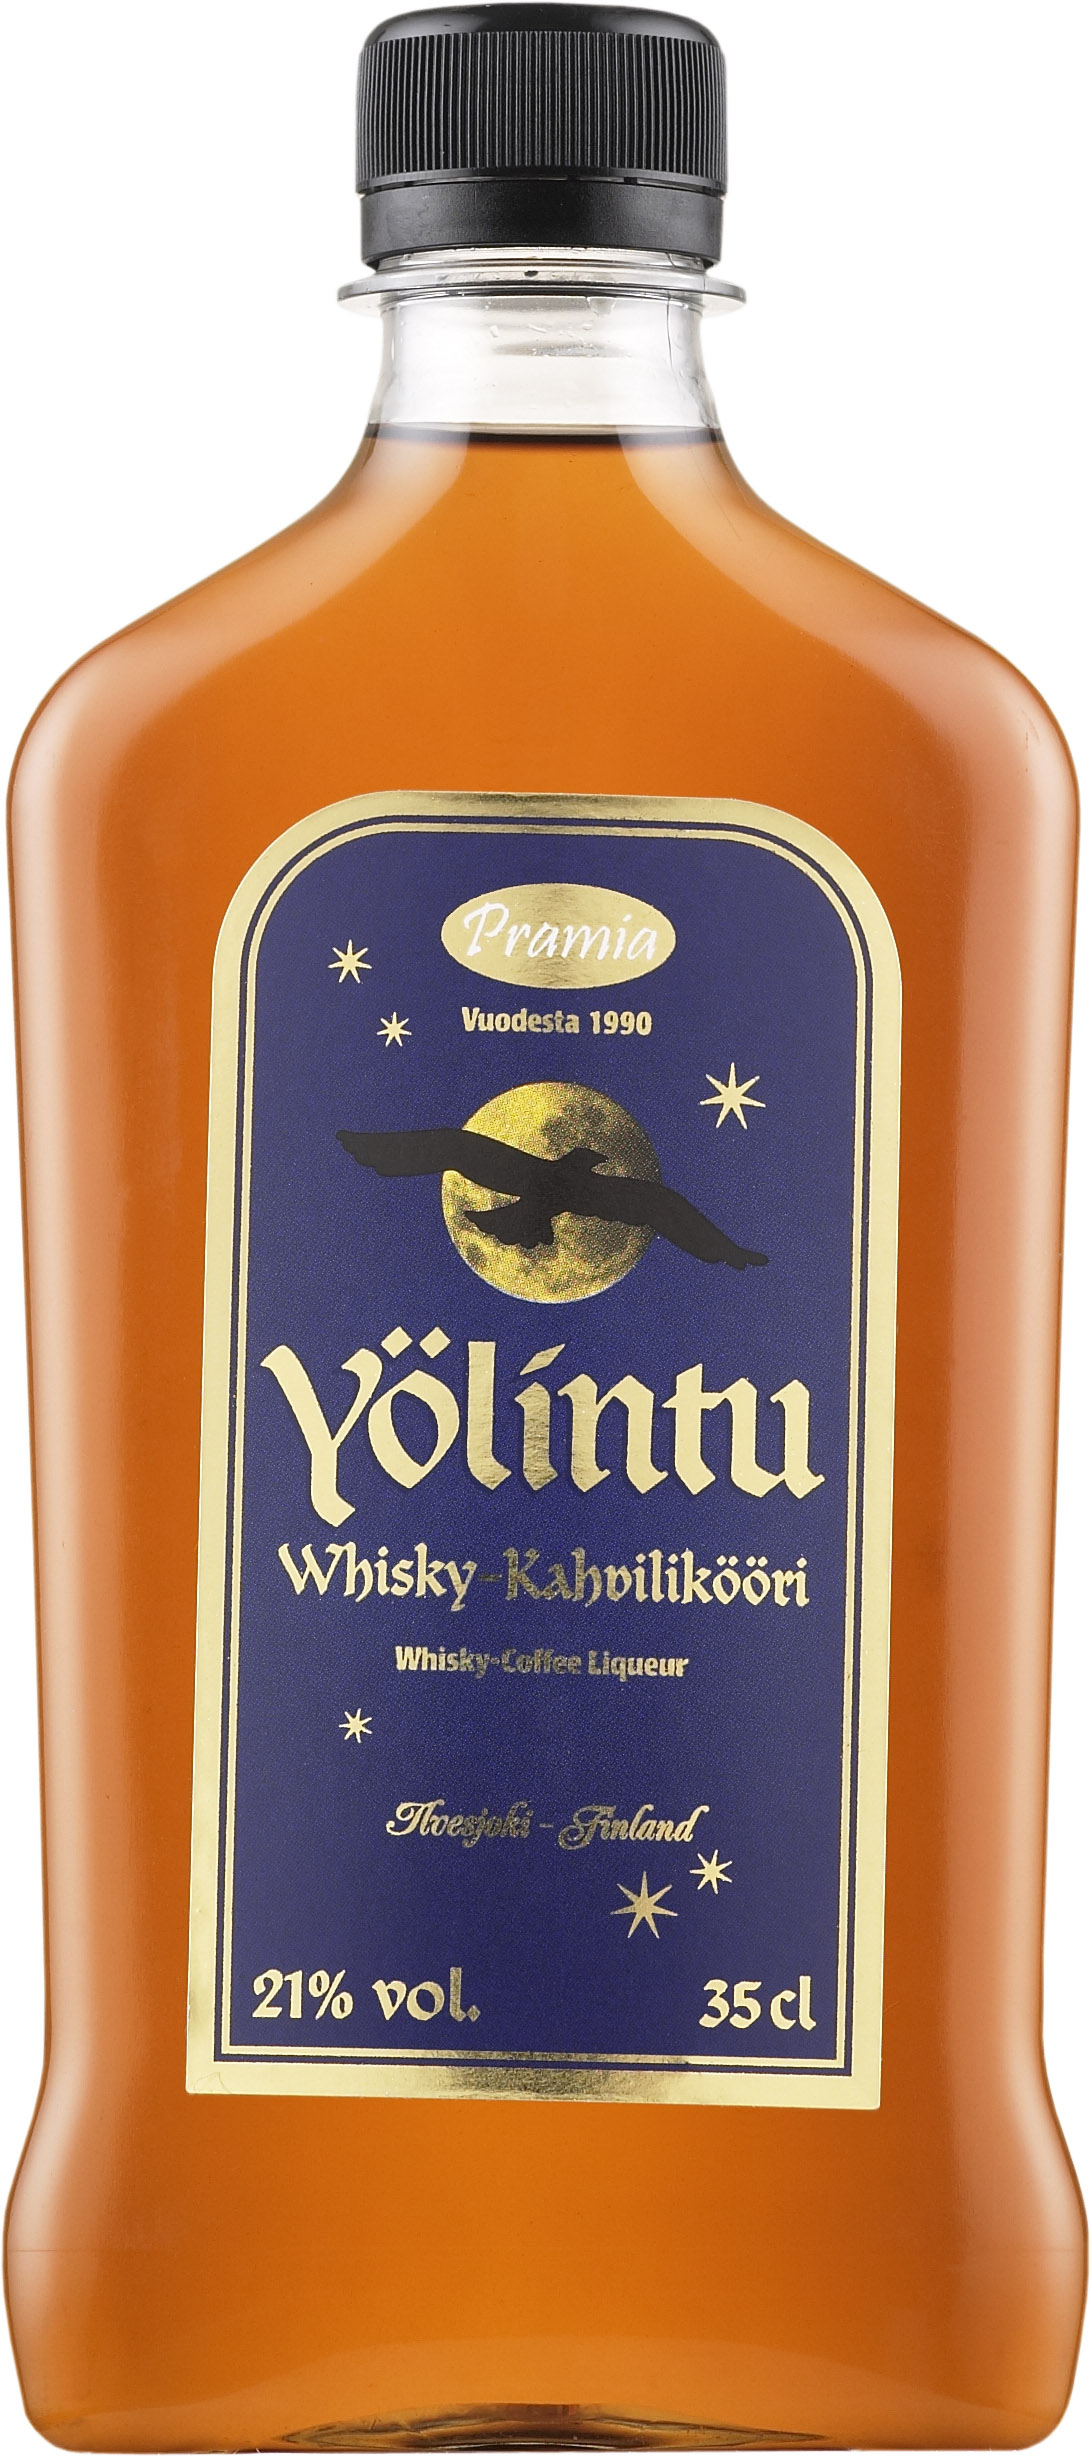 Pramia Yölintu Whisky-Kahvilikööri plastic bottle